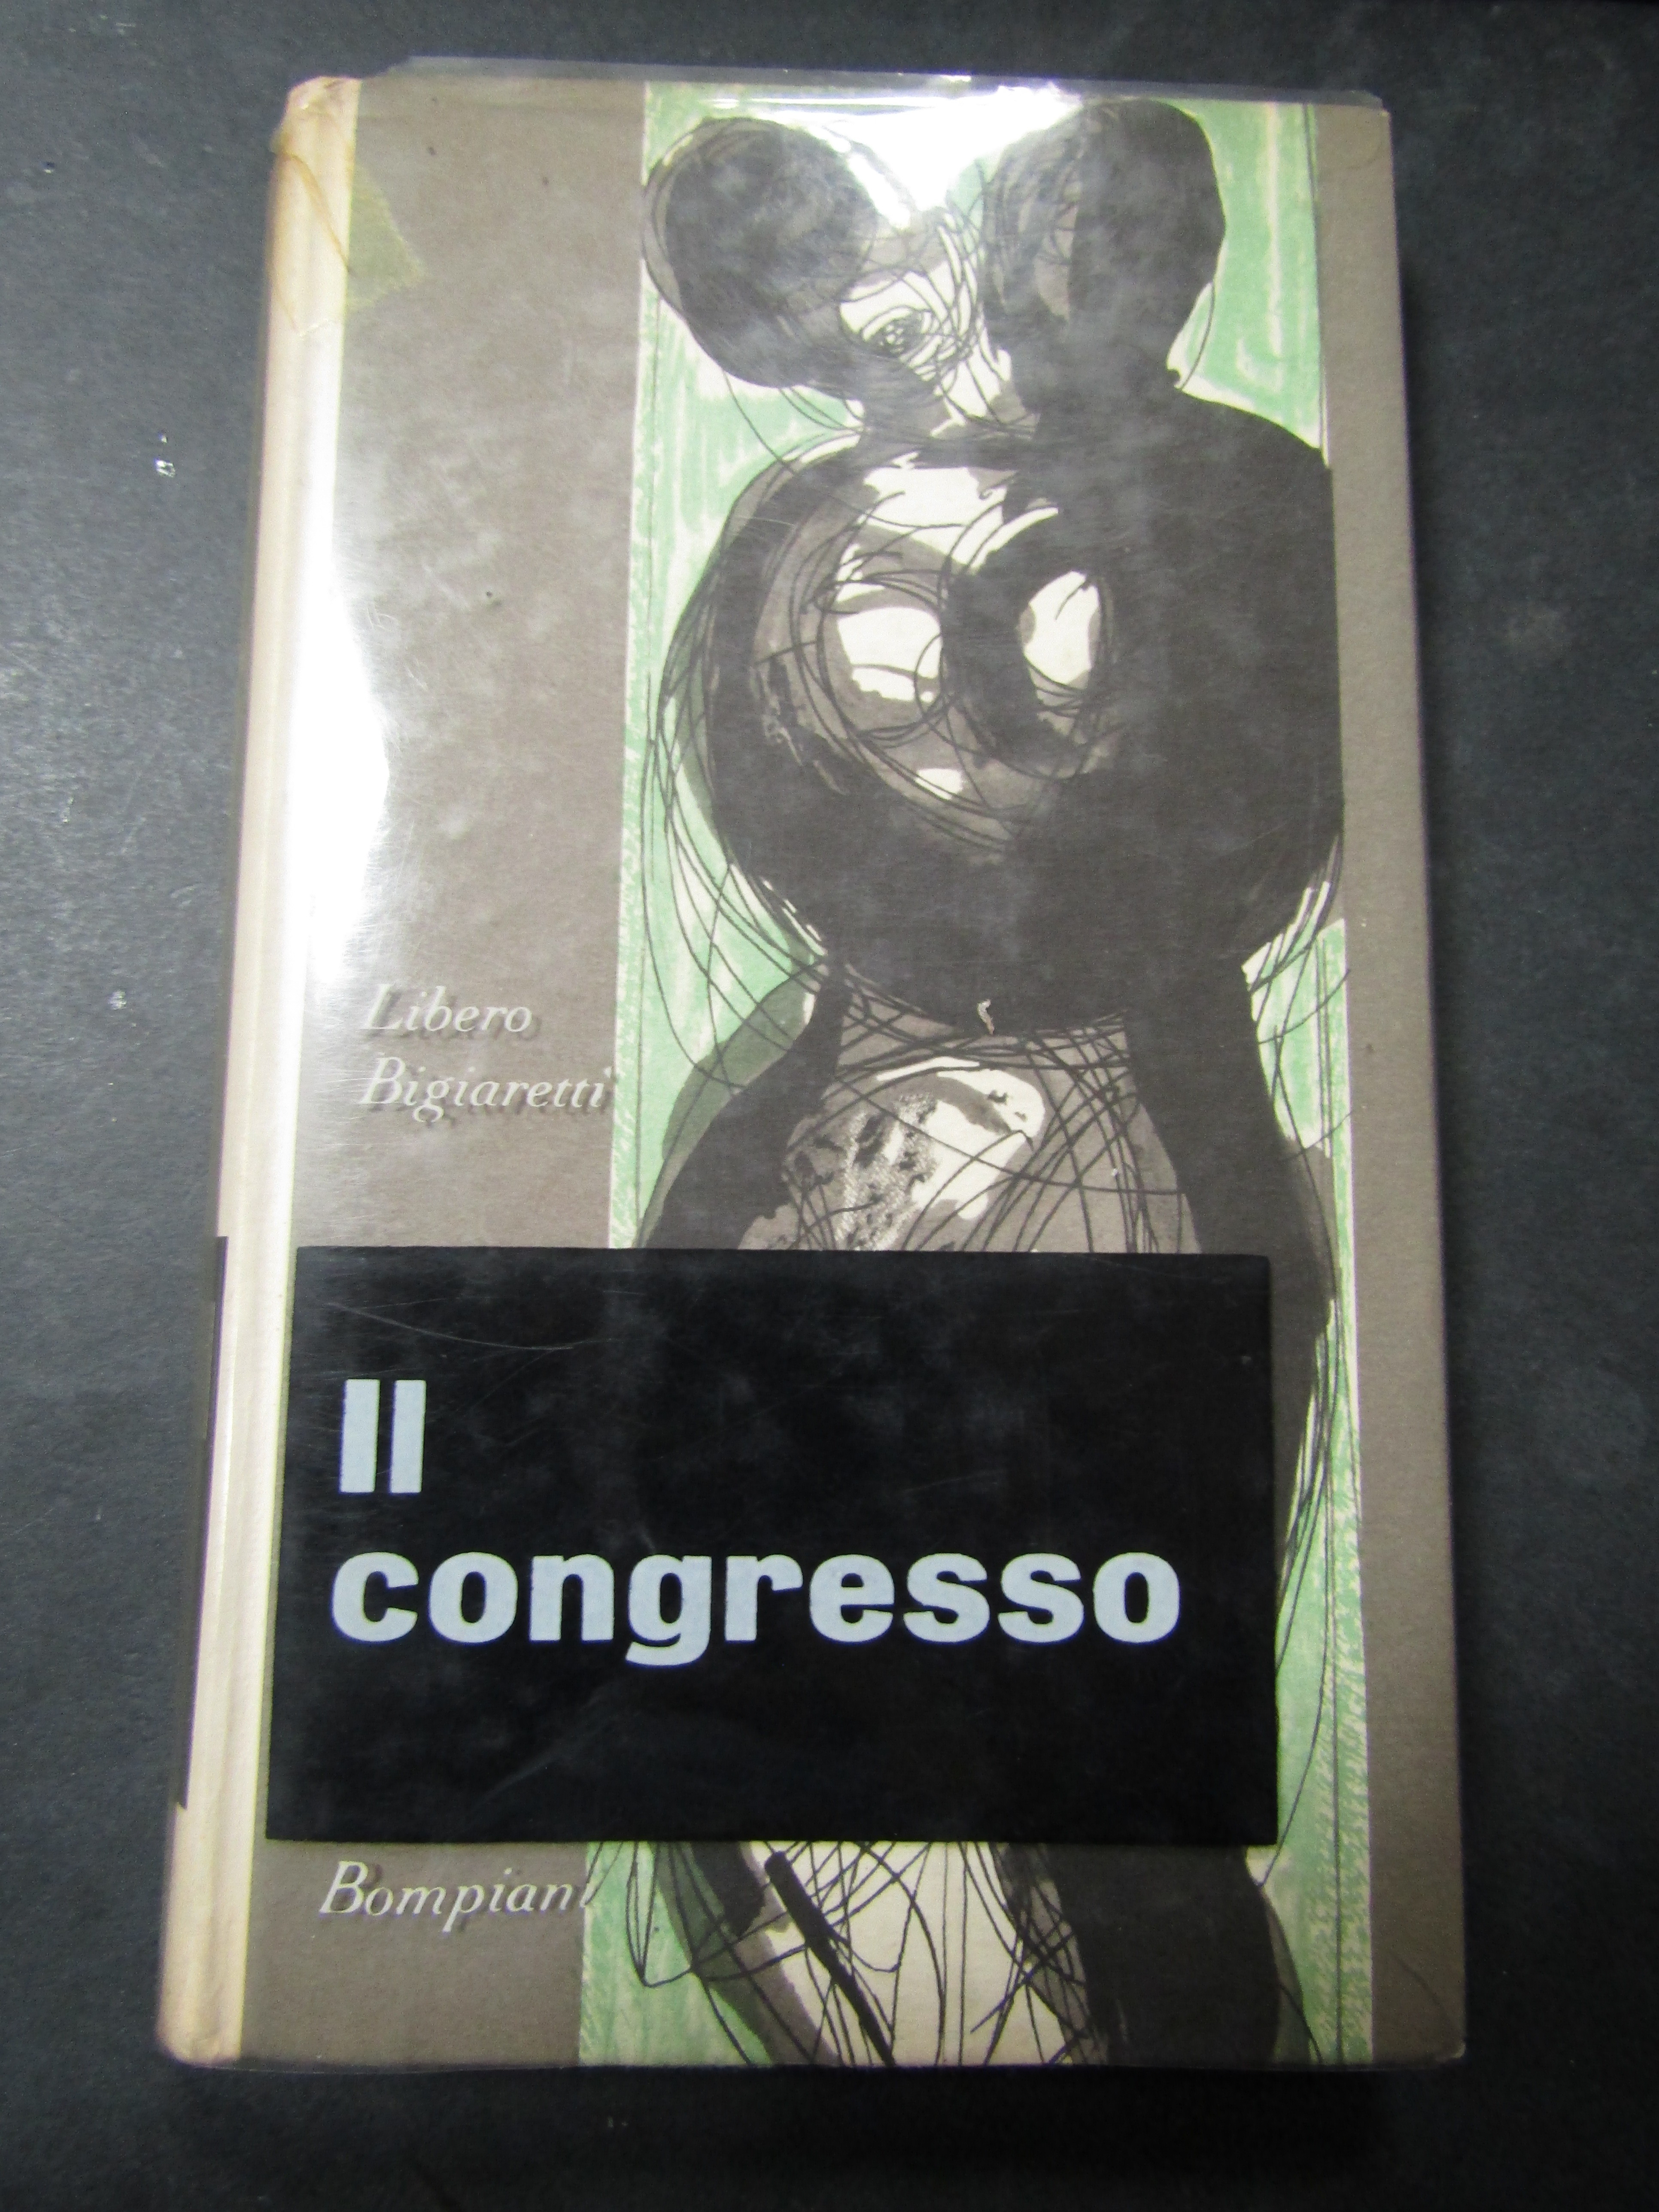 Bigiaretti Libero. Il congresso. Bompiani. 1963